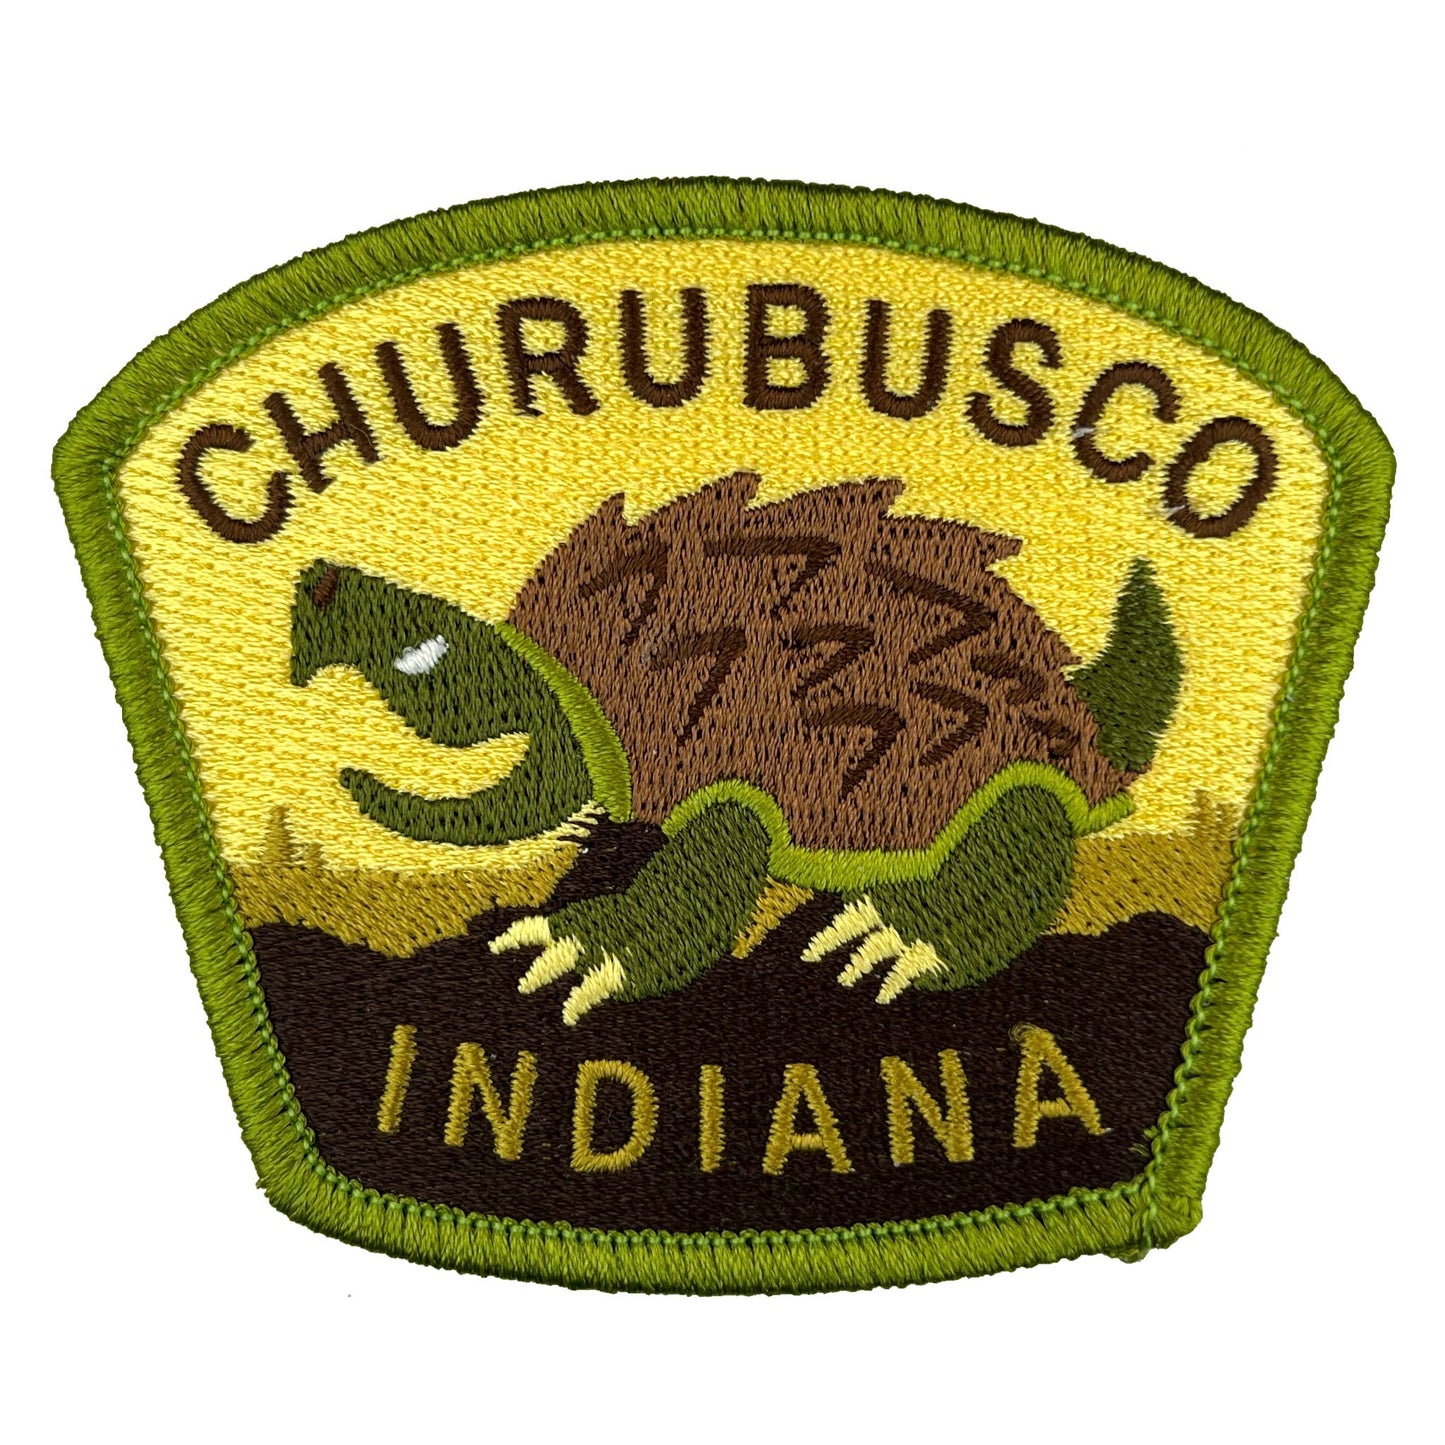 Churubusco, Indiana Travel Patch